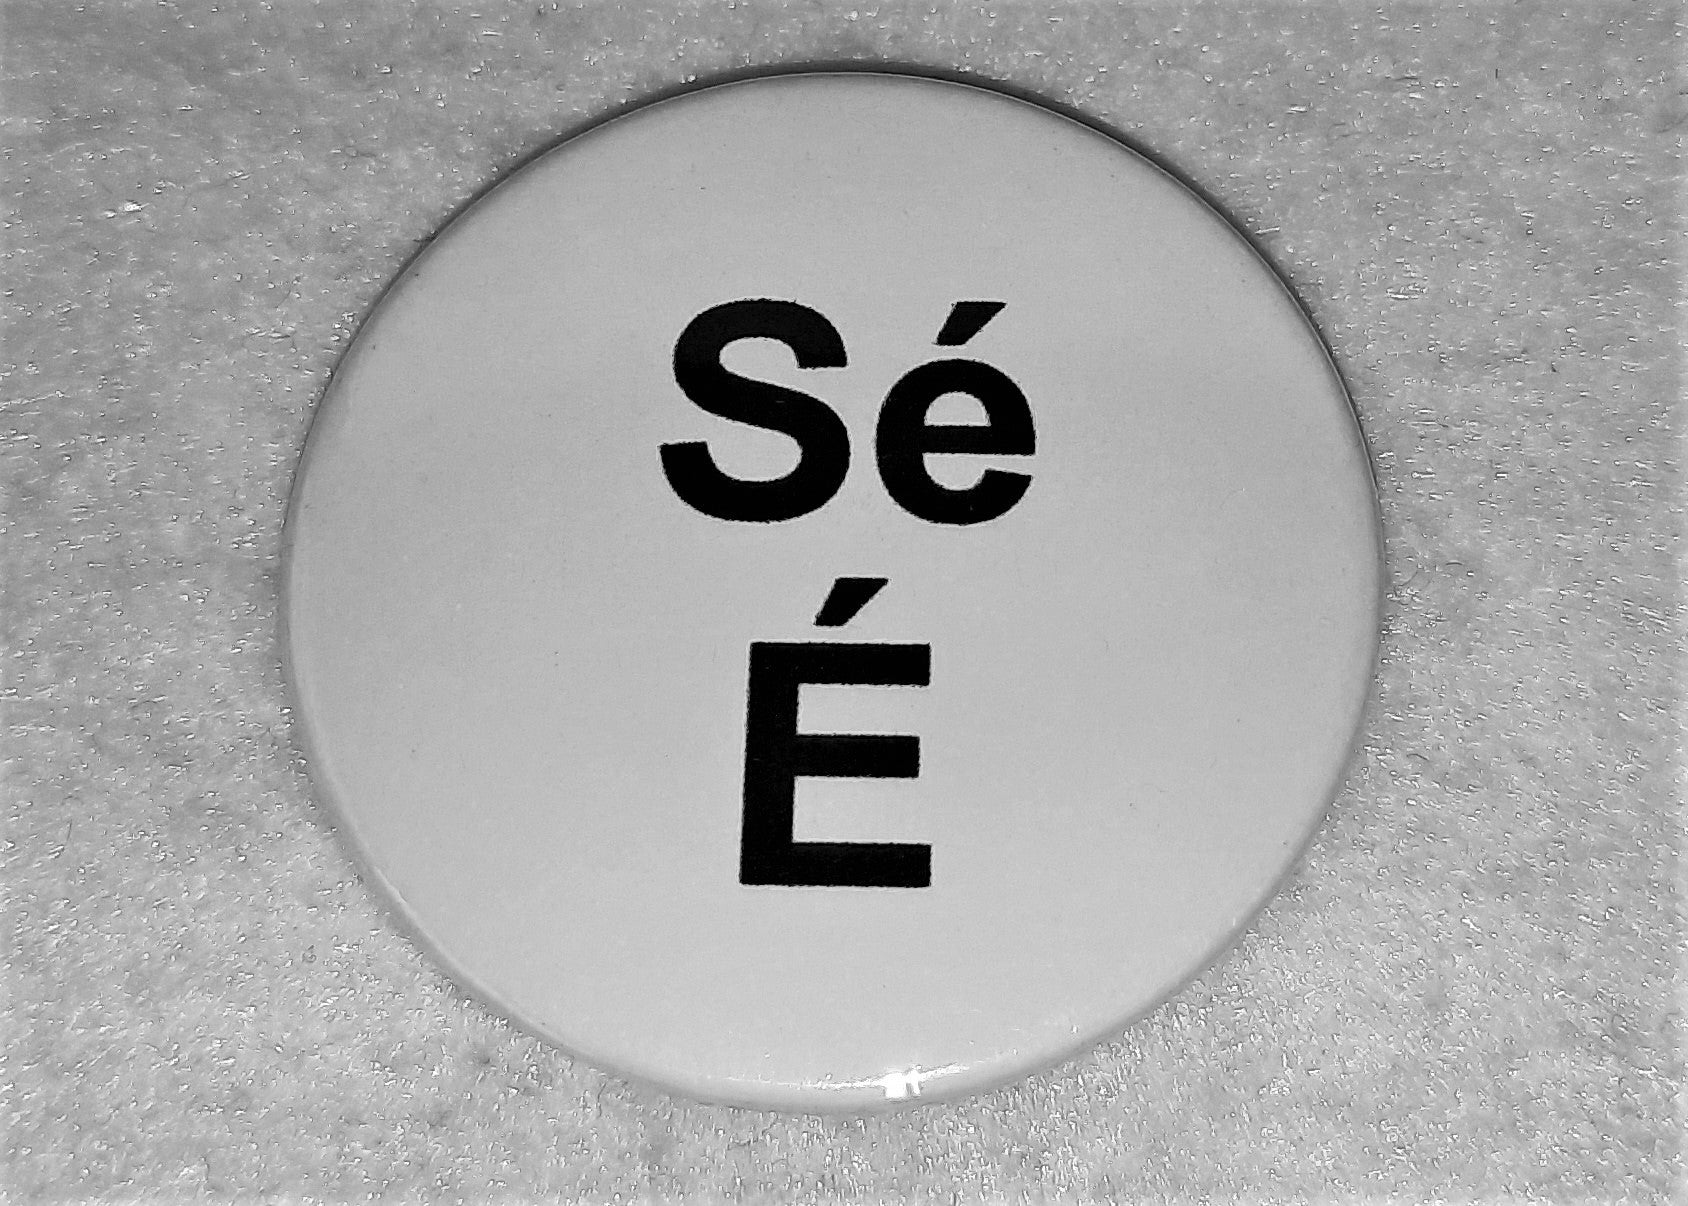 He/Him & Sé/É  Pronoun Badge - Tully Crafts